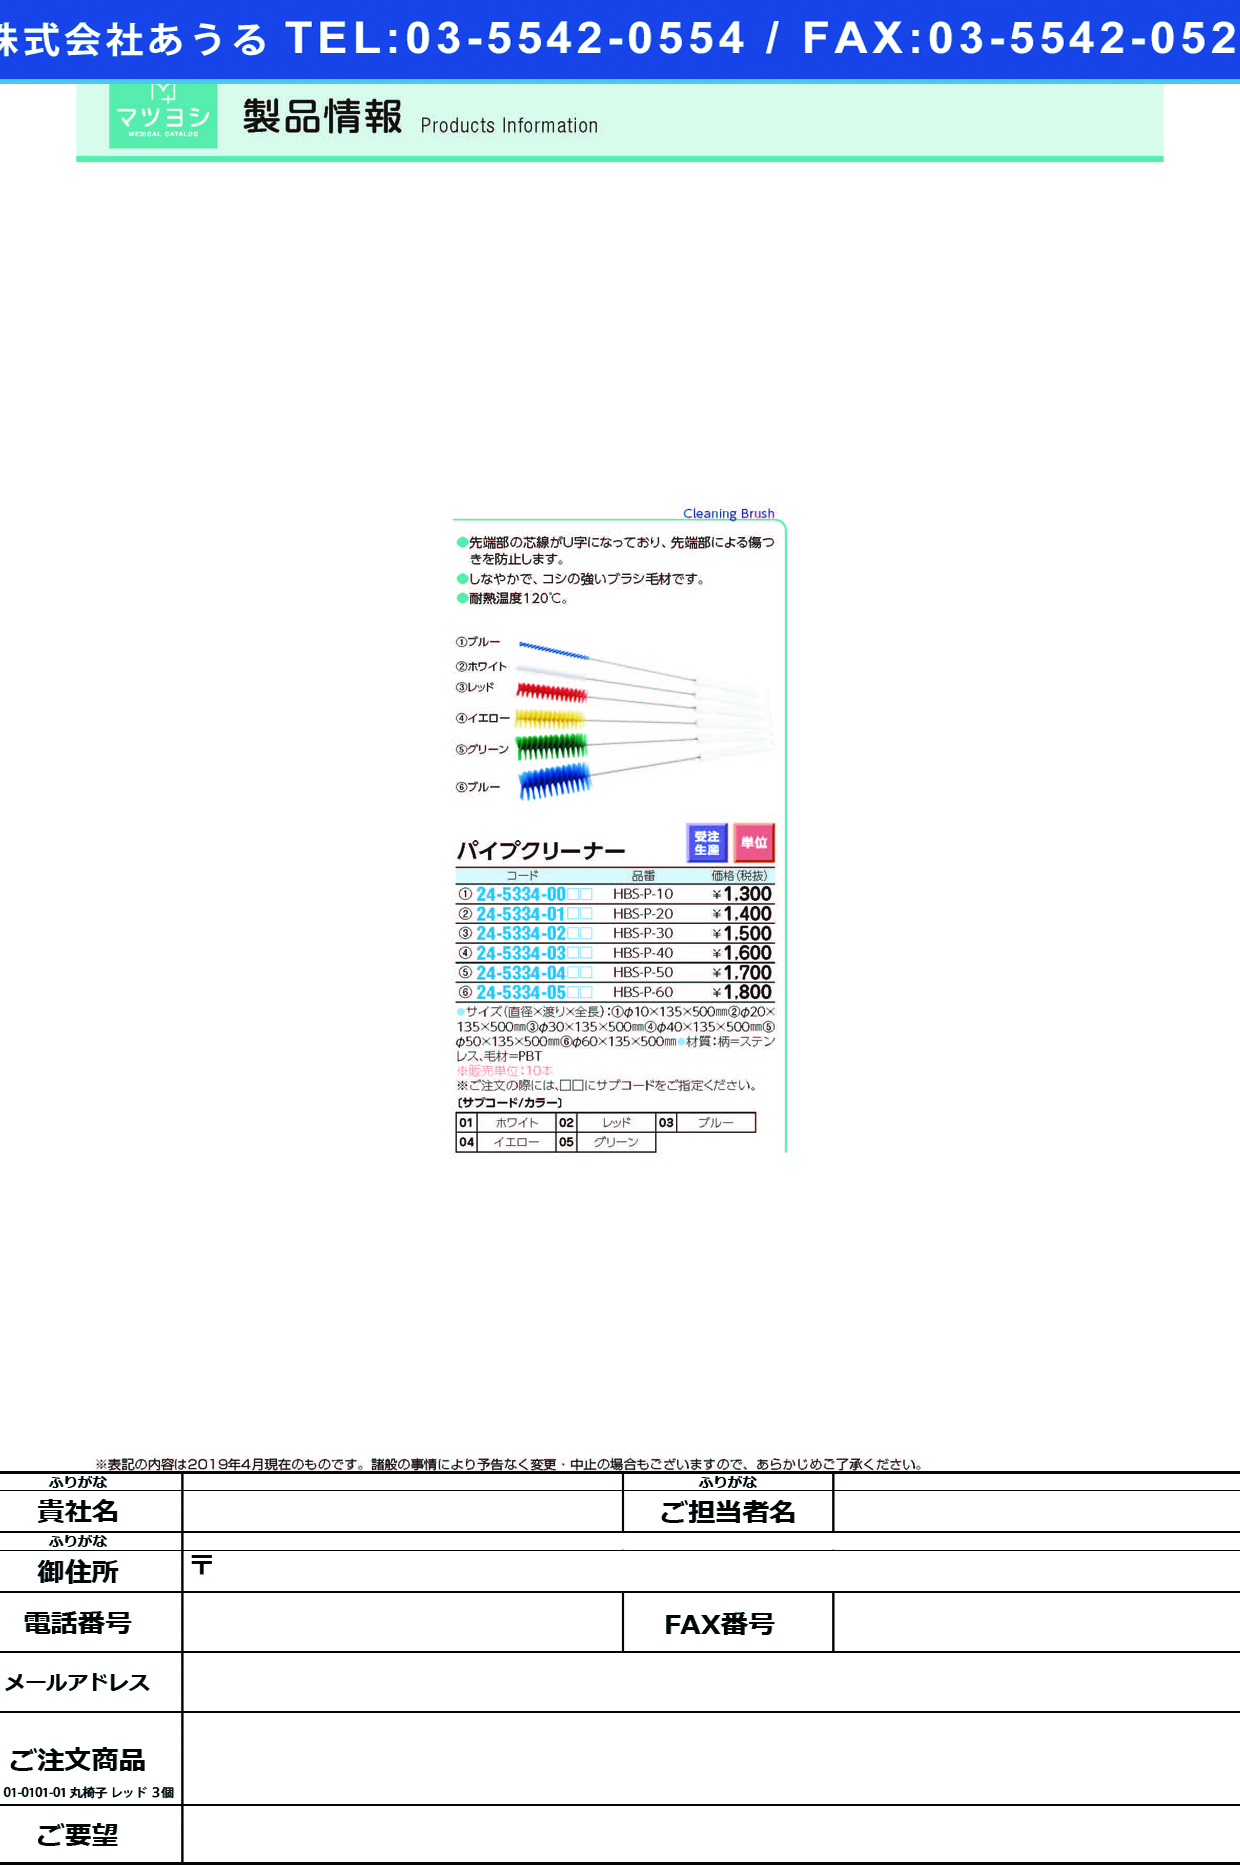 (24-5334-02)パイプクリーナー HBS-P-30 ﾊﾟｲﾌﾟｸﾘｰﾅｰ ブルー【10本単位】【2019年カタログ商品】